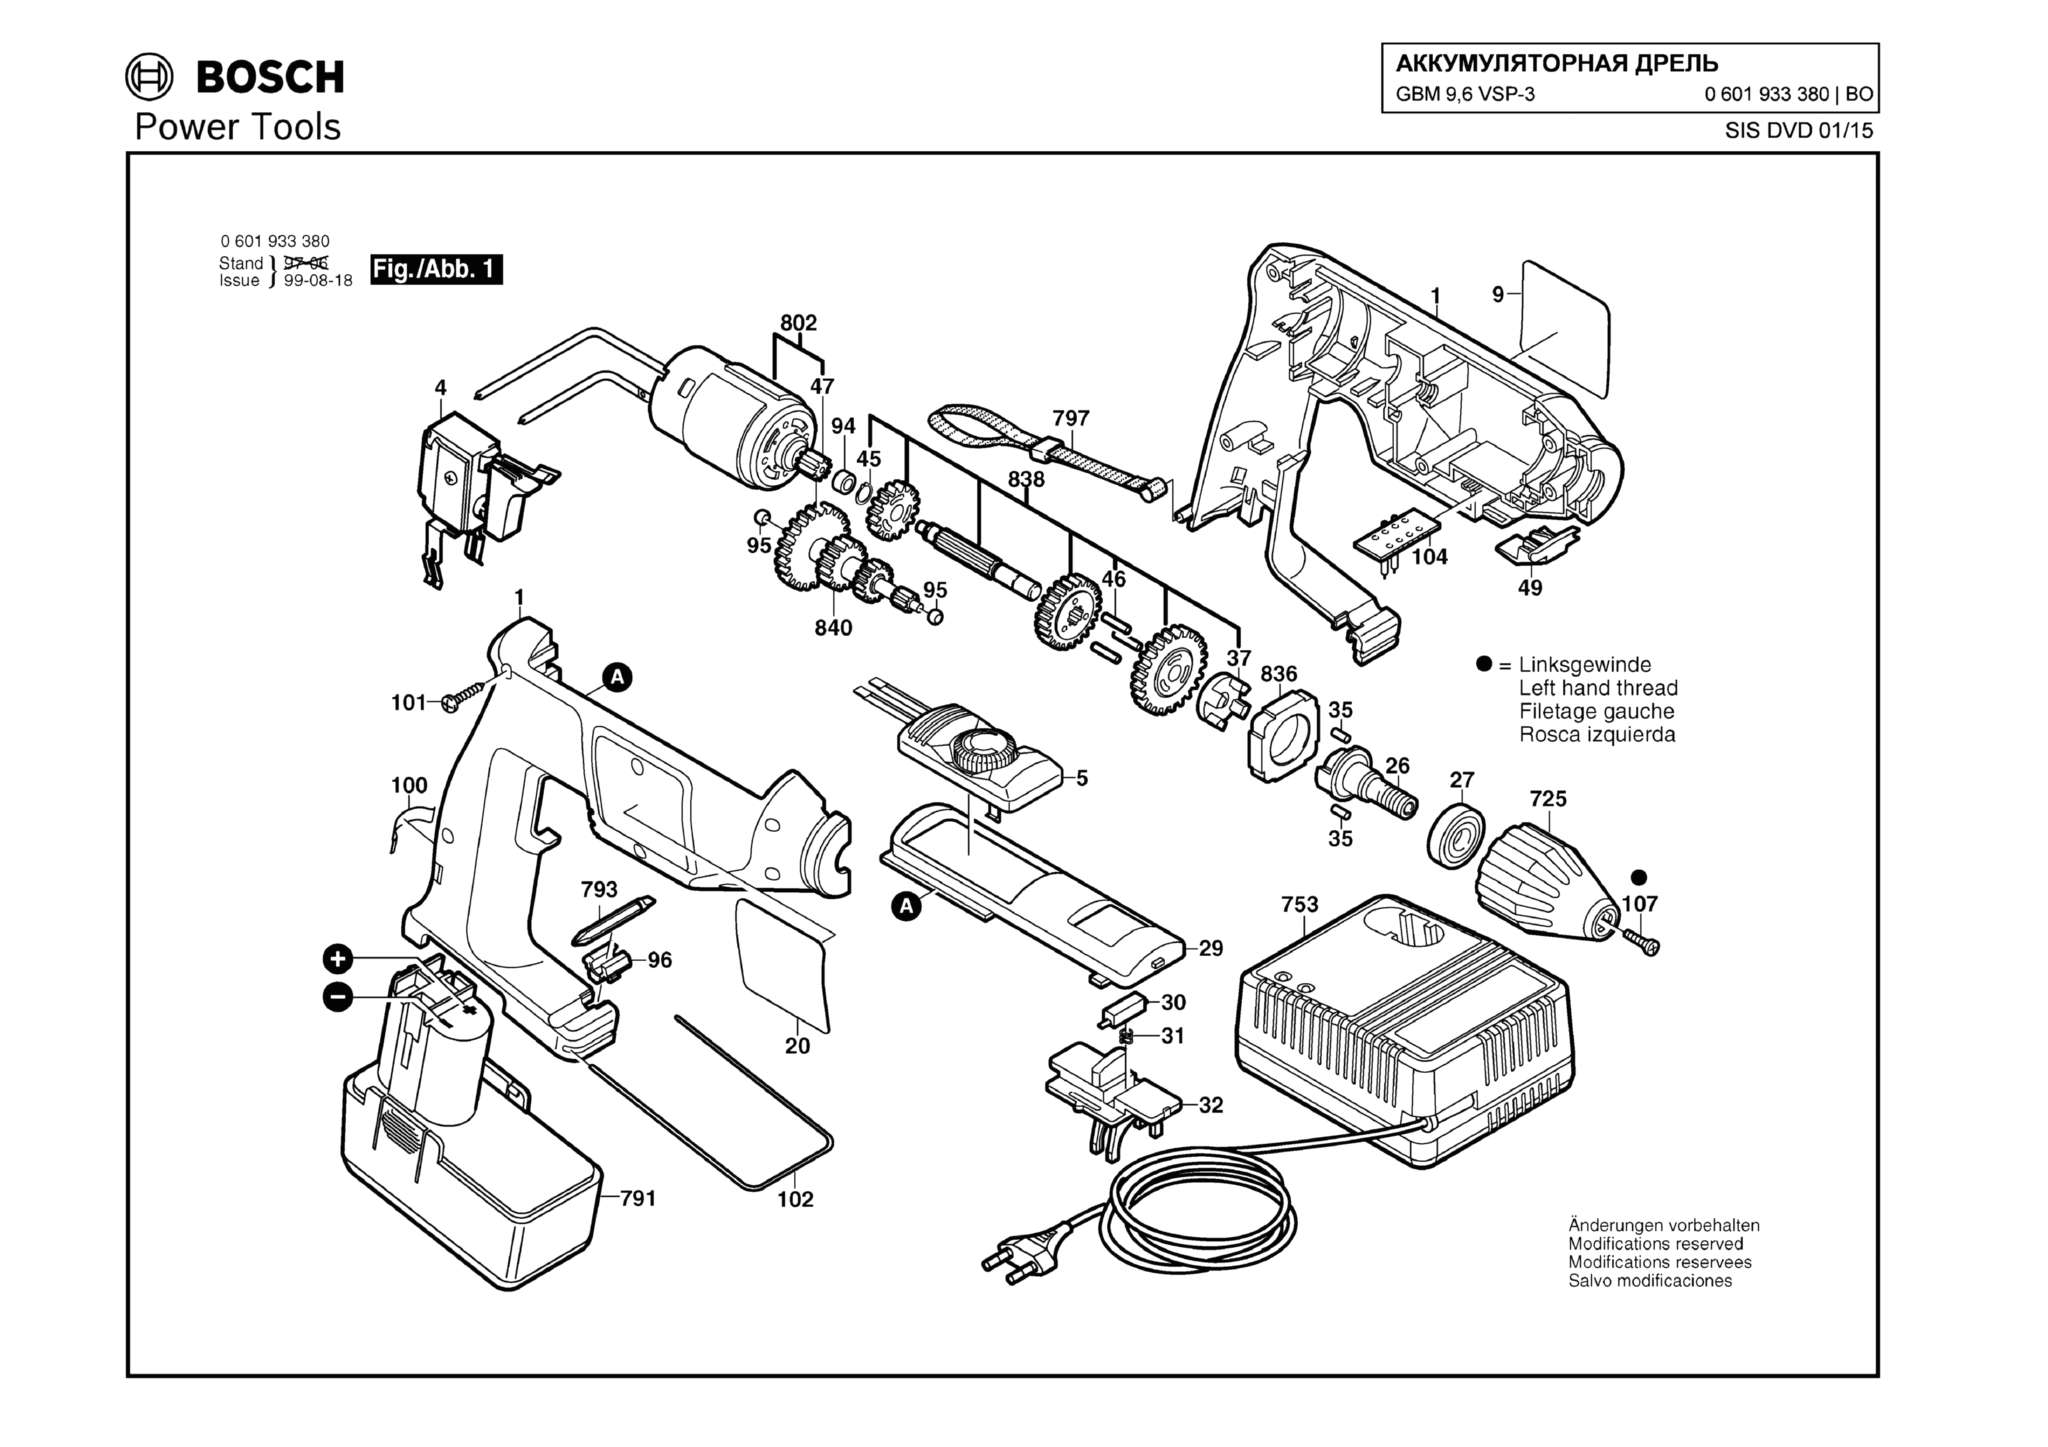 Запчасти, схема и деталировка Bosch GBM 9,6 VSP-3 (ТИП 0601933380)